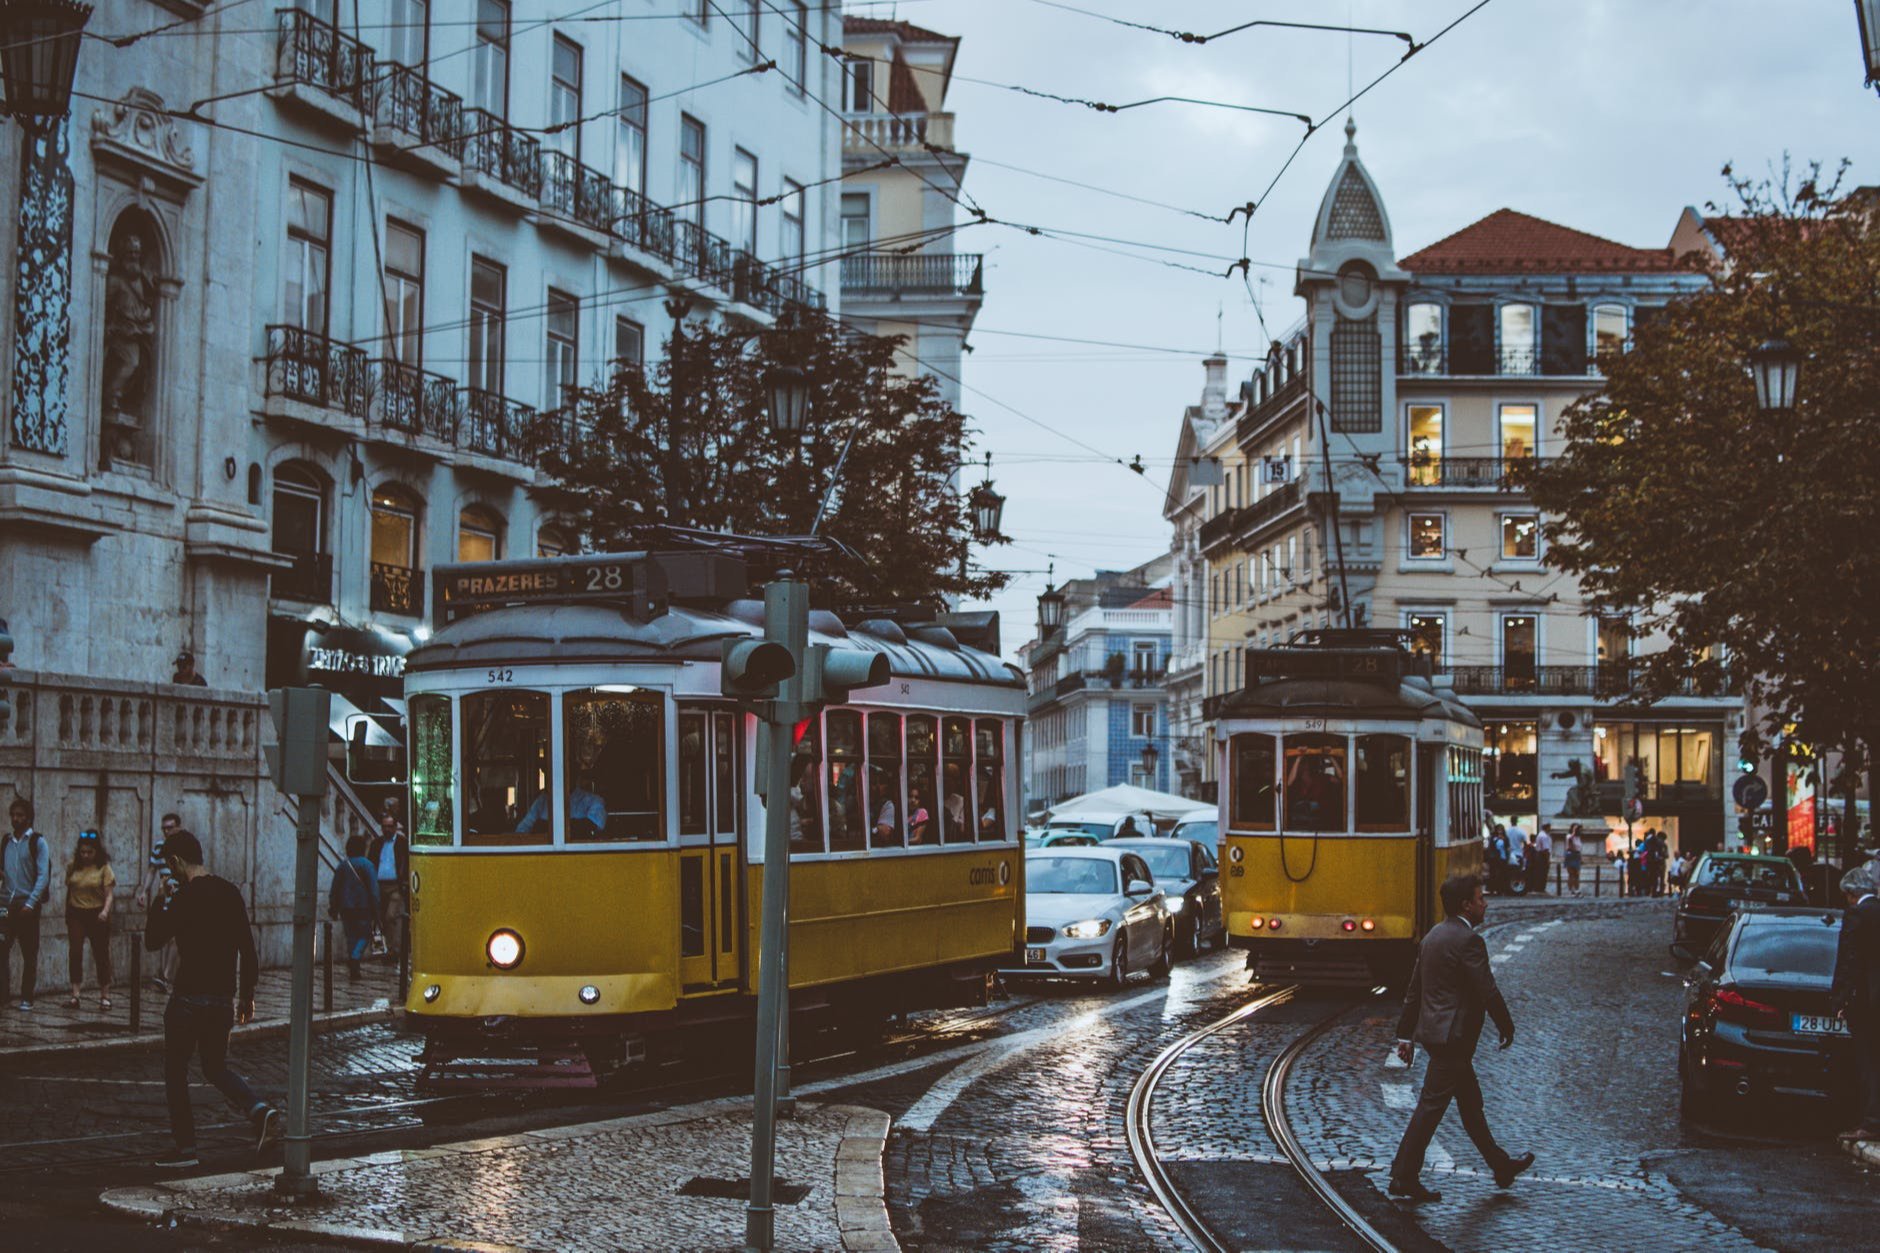 Quais são as atrações mais populares em cada distrito de Portugal